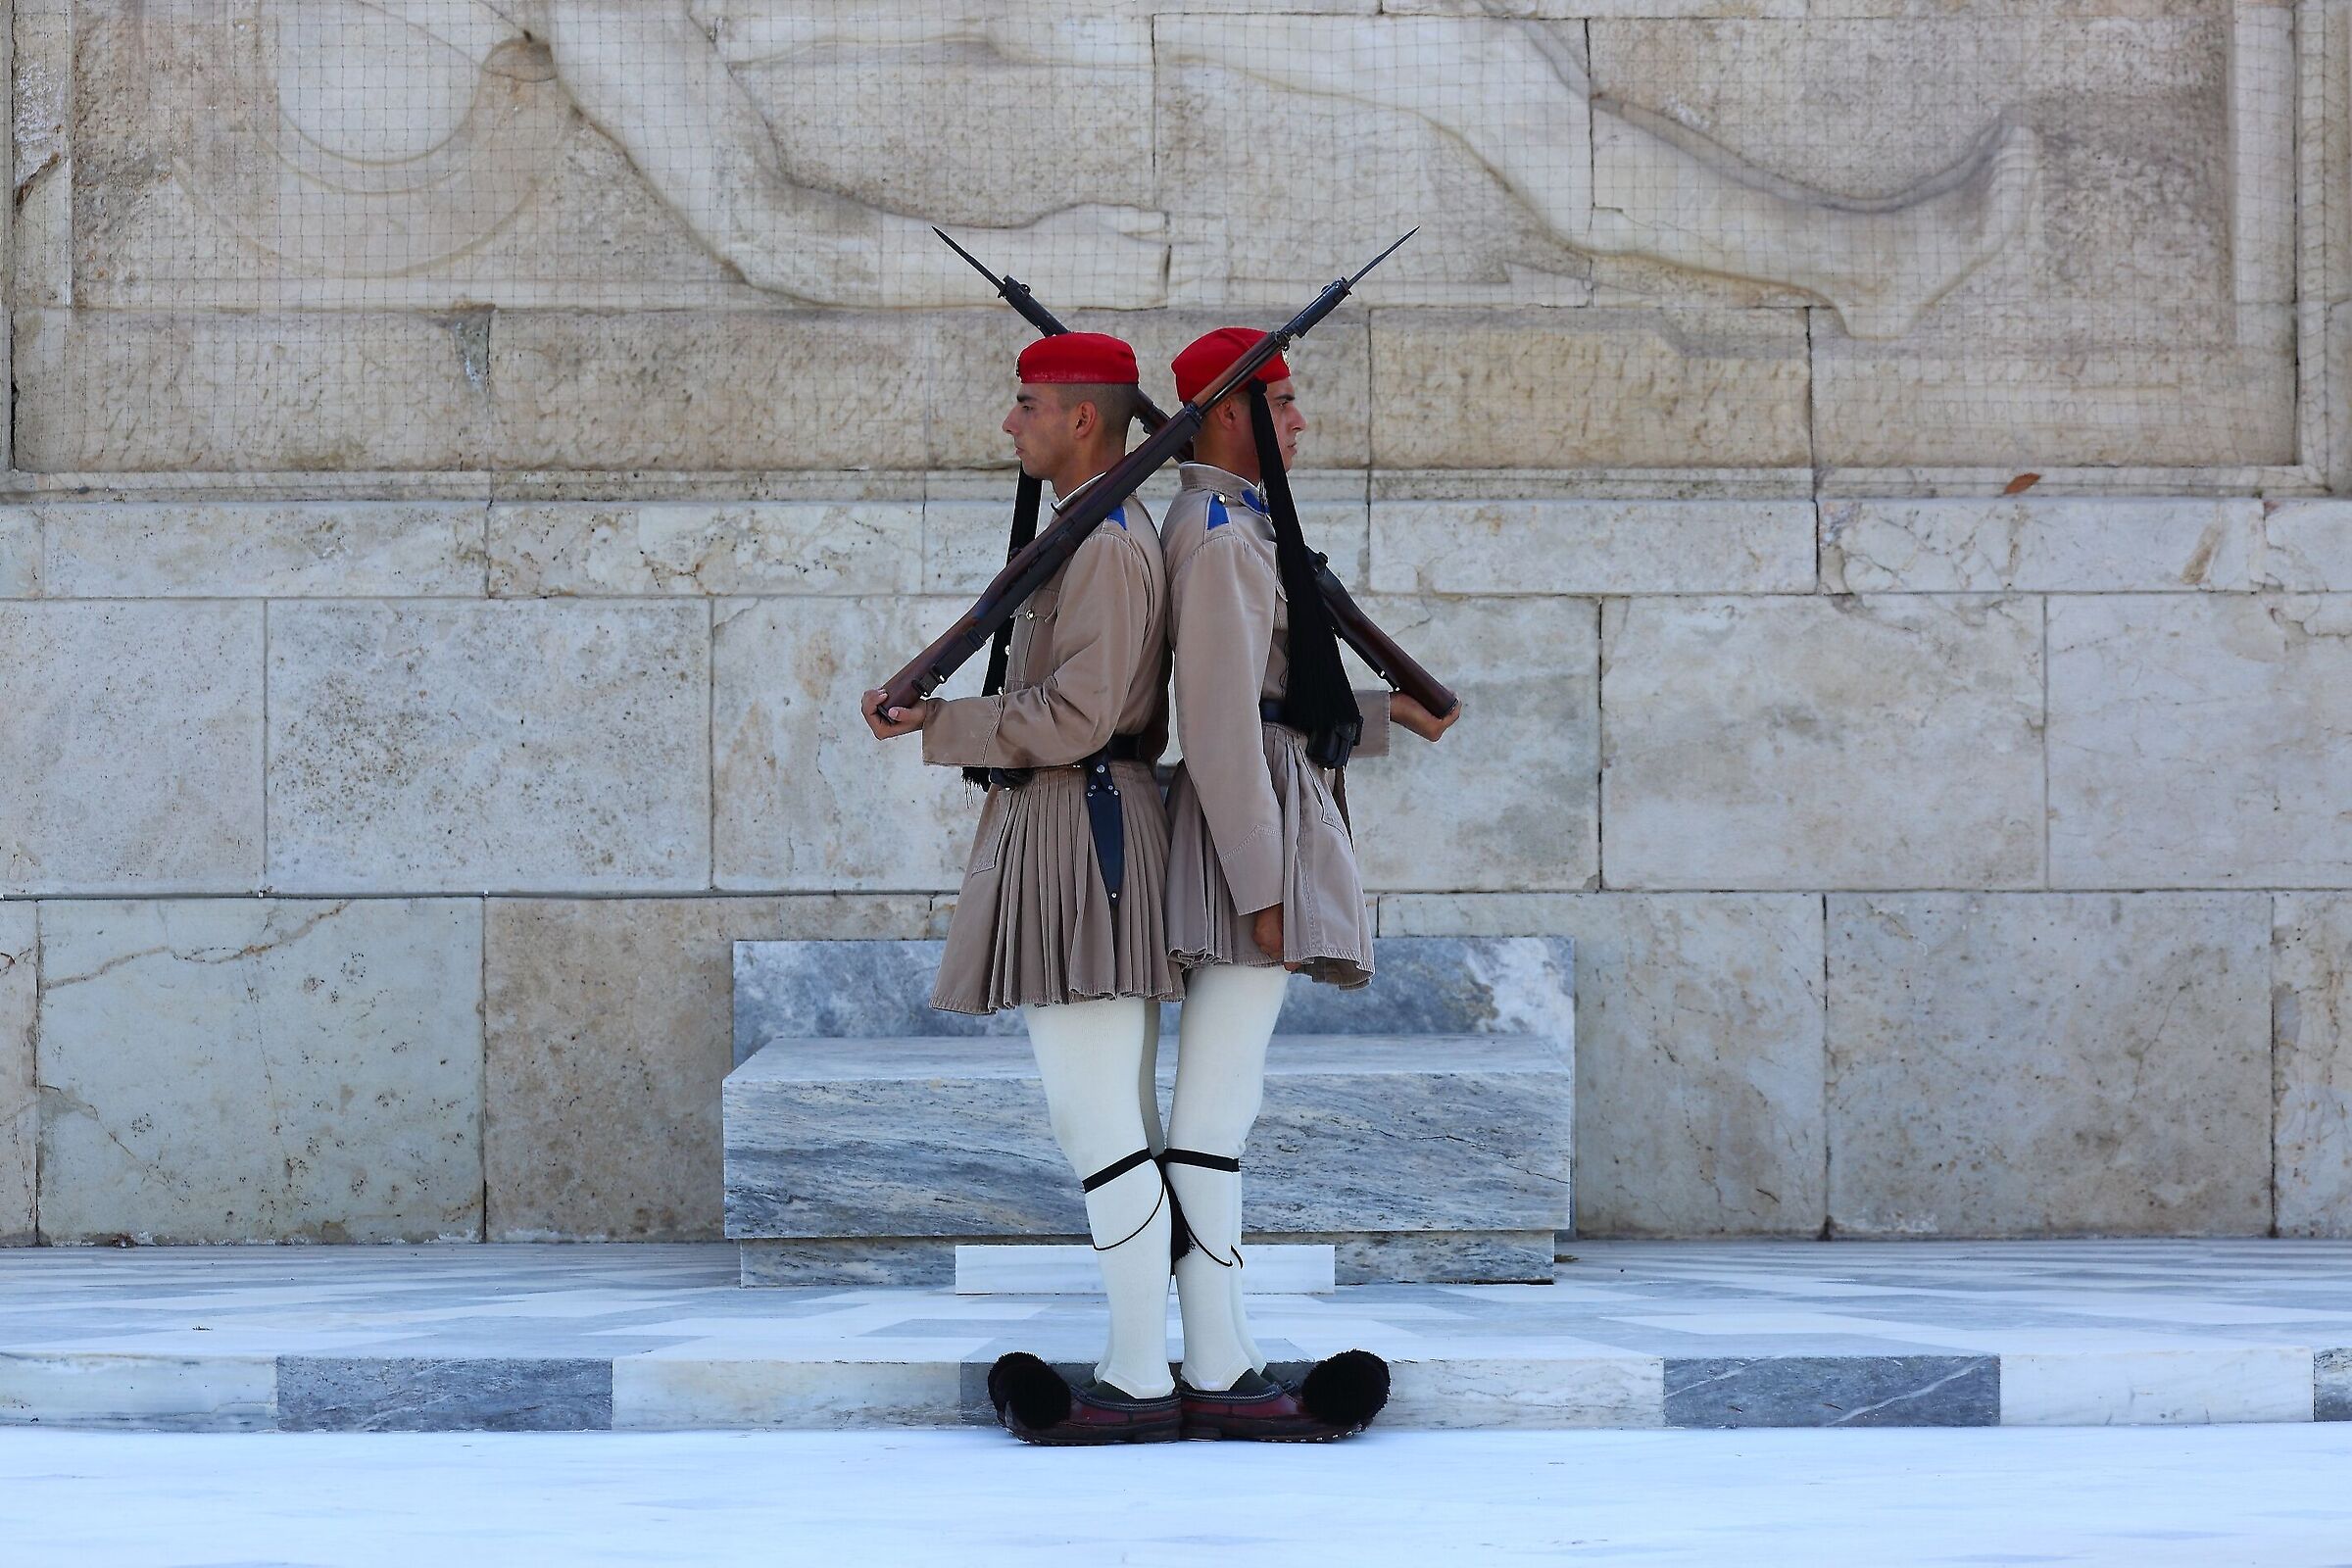 Guardia d'onore al Milite Ignoto a piazza Syntagma...